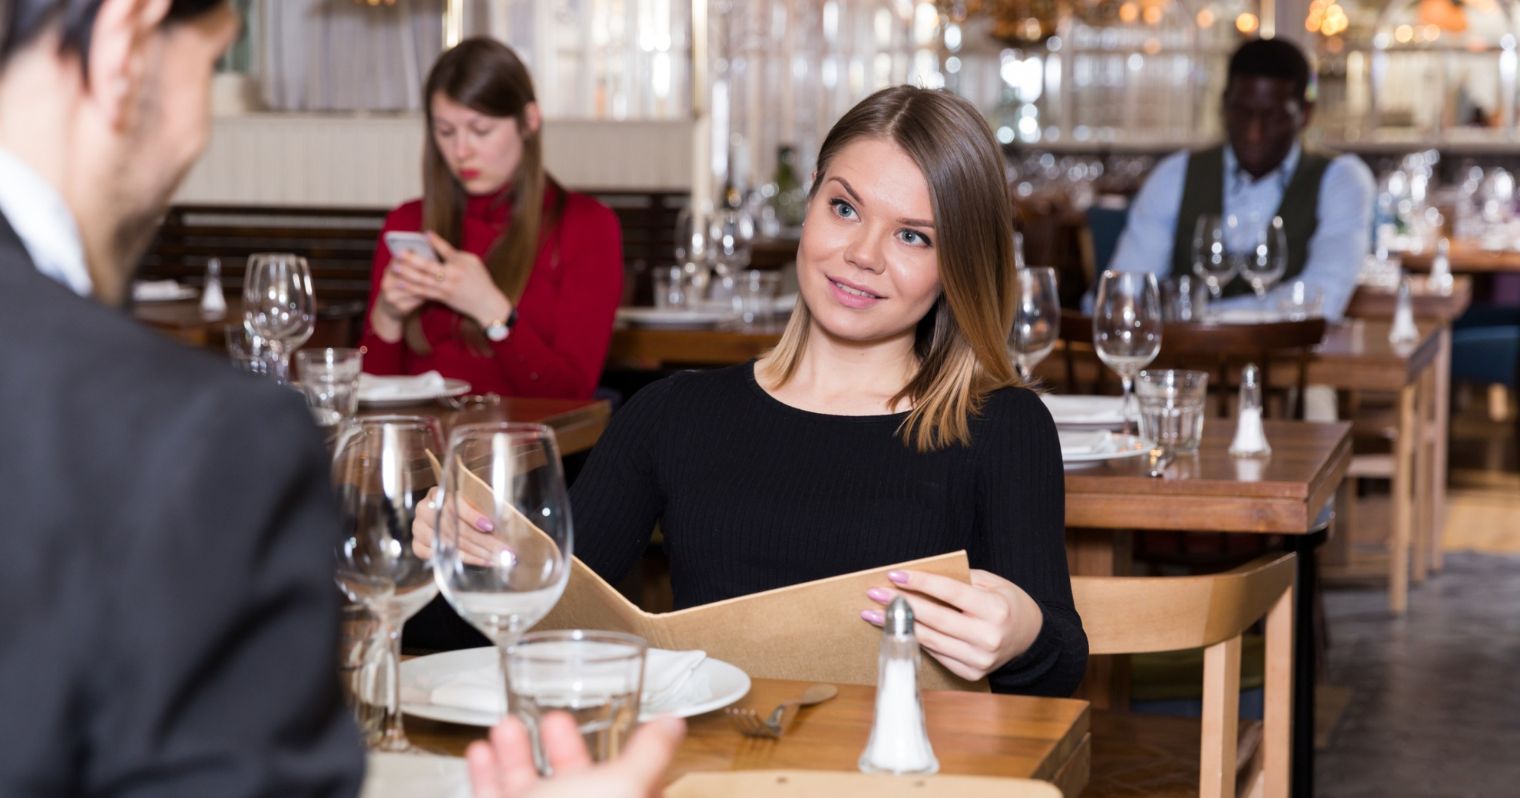 Egy fiatal nő néz egy étteremben egy fiatal férfira a menü felett